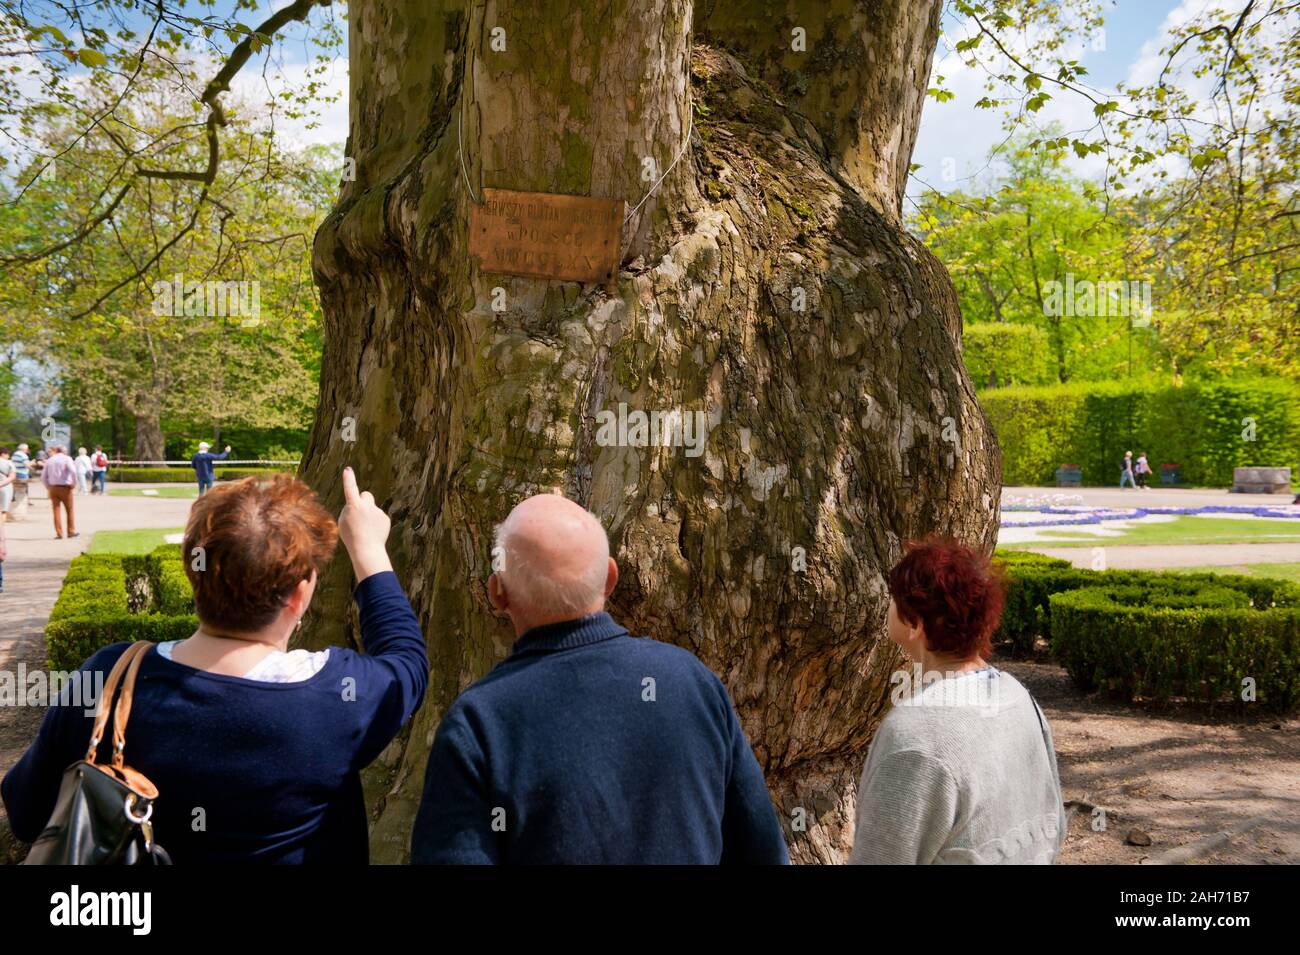 Los visitantes viendo Platanus viejo árbol enorme placa en el jardín barroco ornamental junto al Palacio del Radziwiłł en Nieborów en Polonia, Europa. Foto de stock